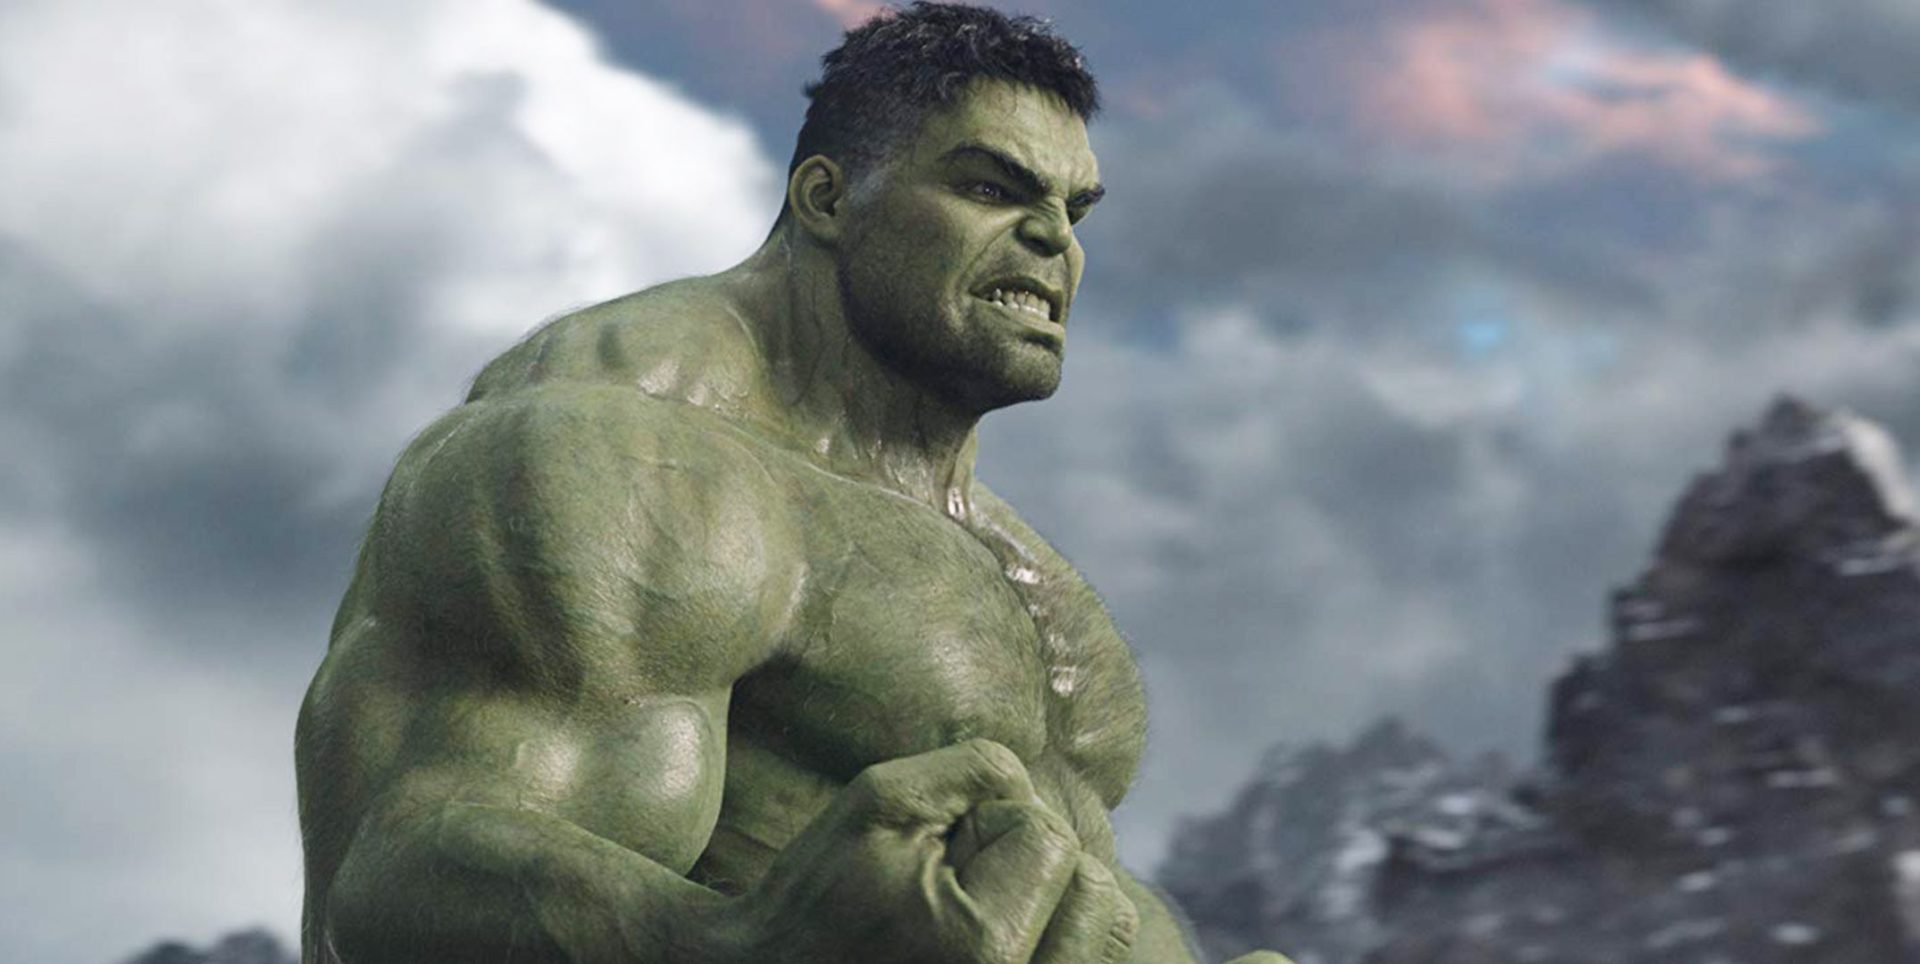 Filme do Hulk tem conexão secreta com herói dos Vingadores